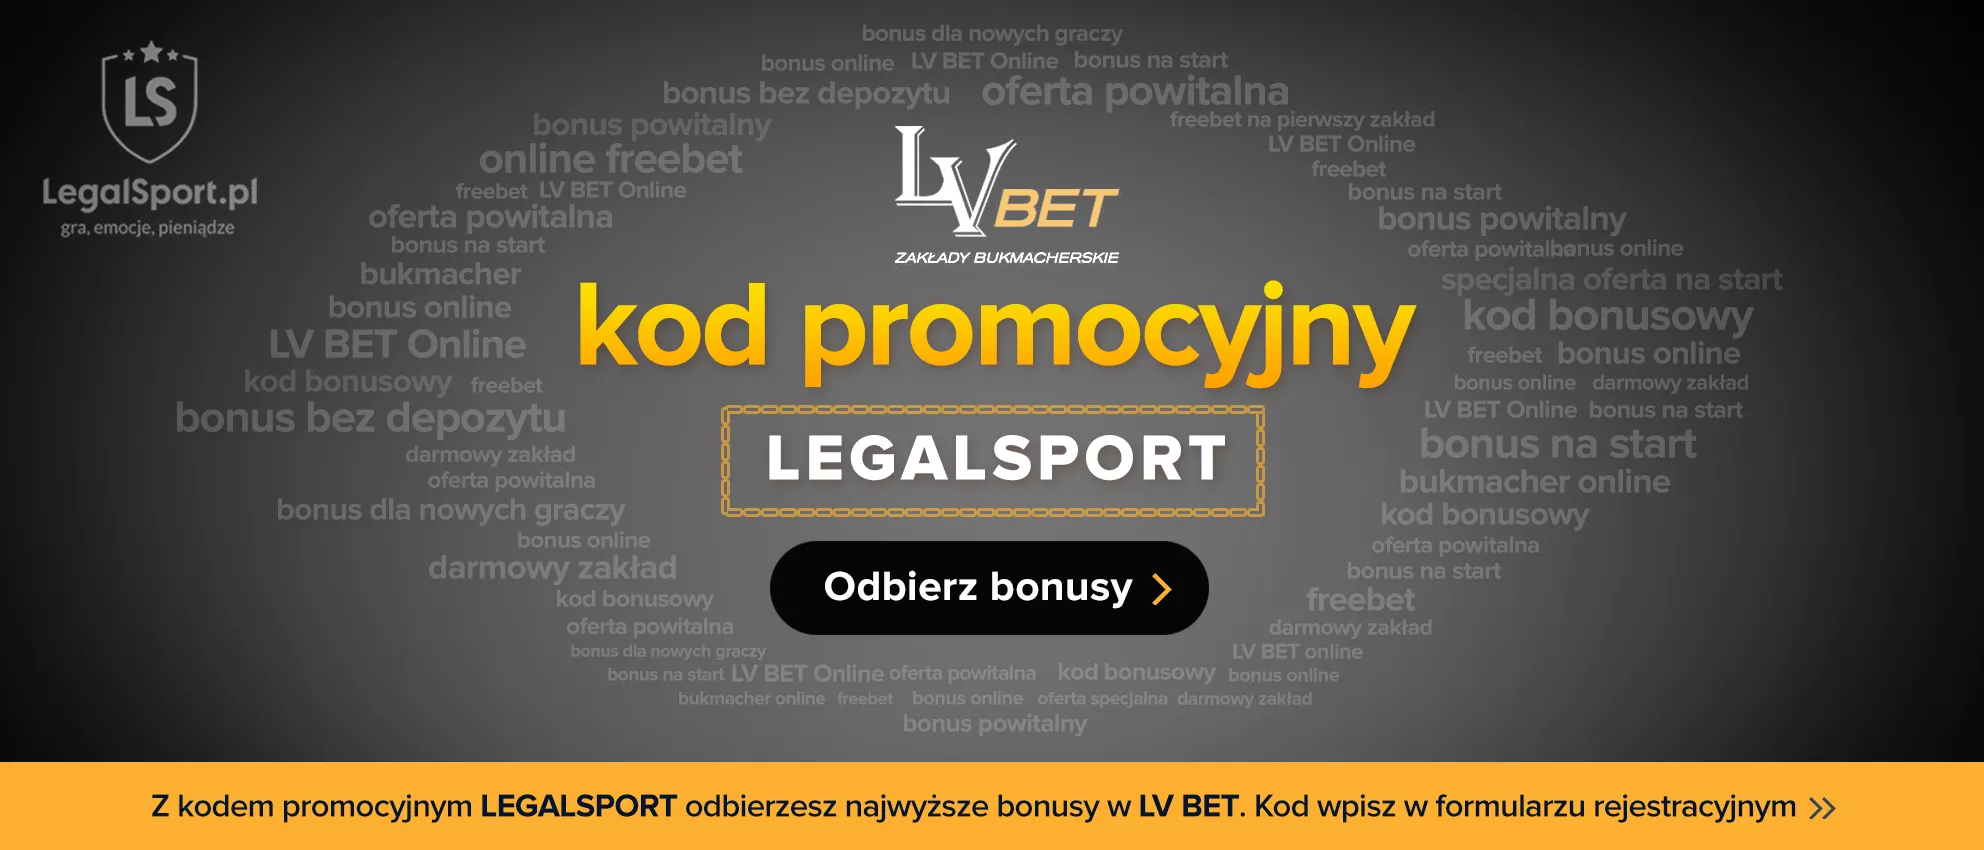 W LV BET oferta powitalna działa z kodem promocyjnym LEGALSPORT